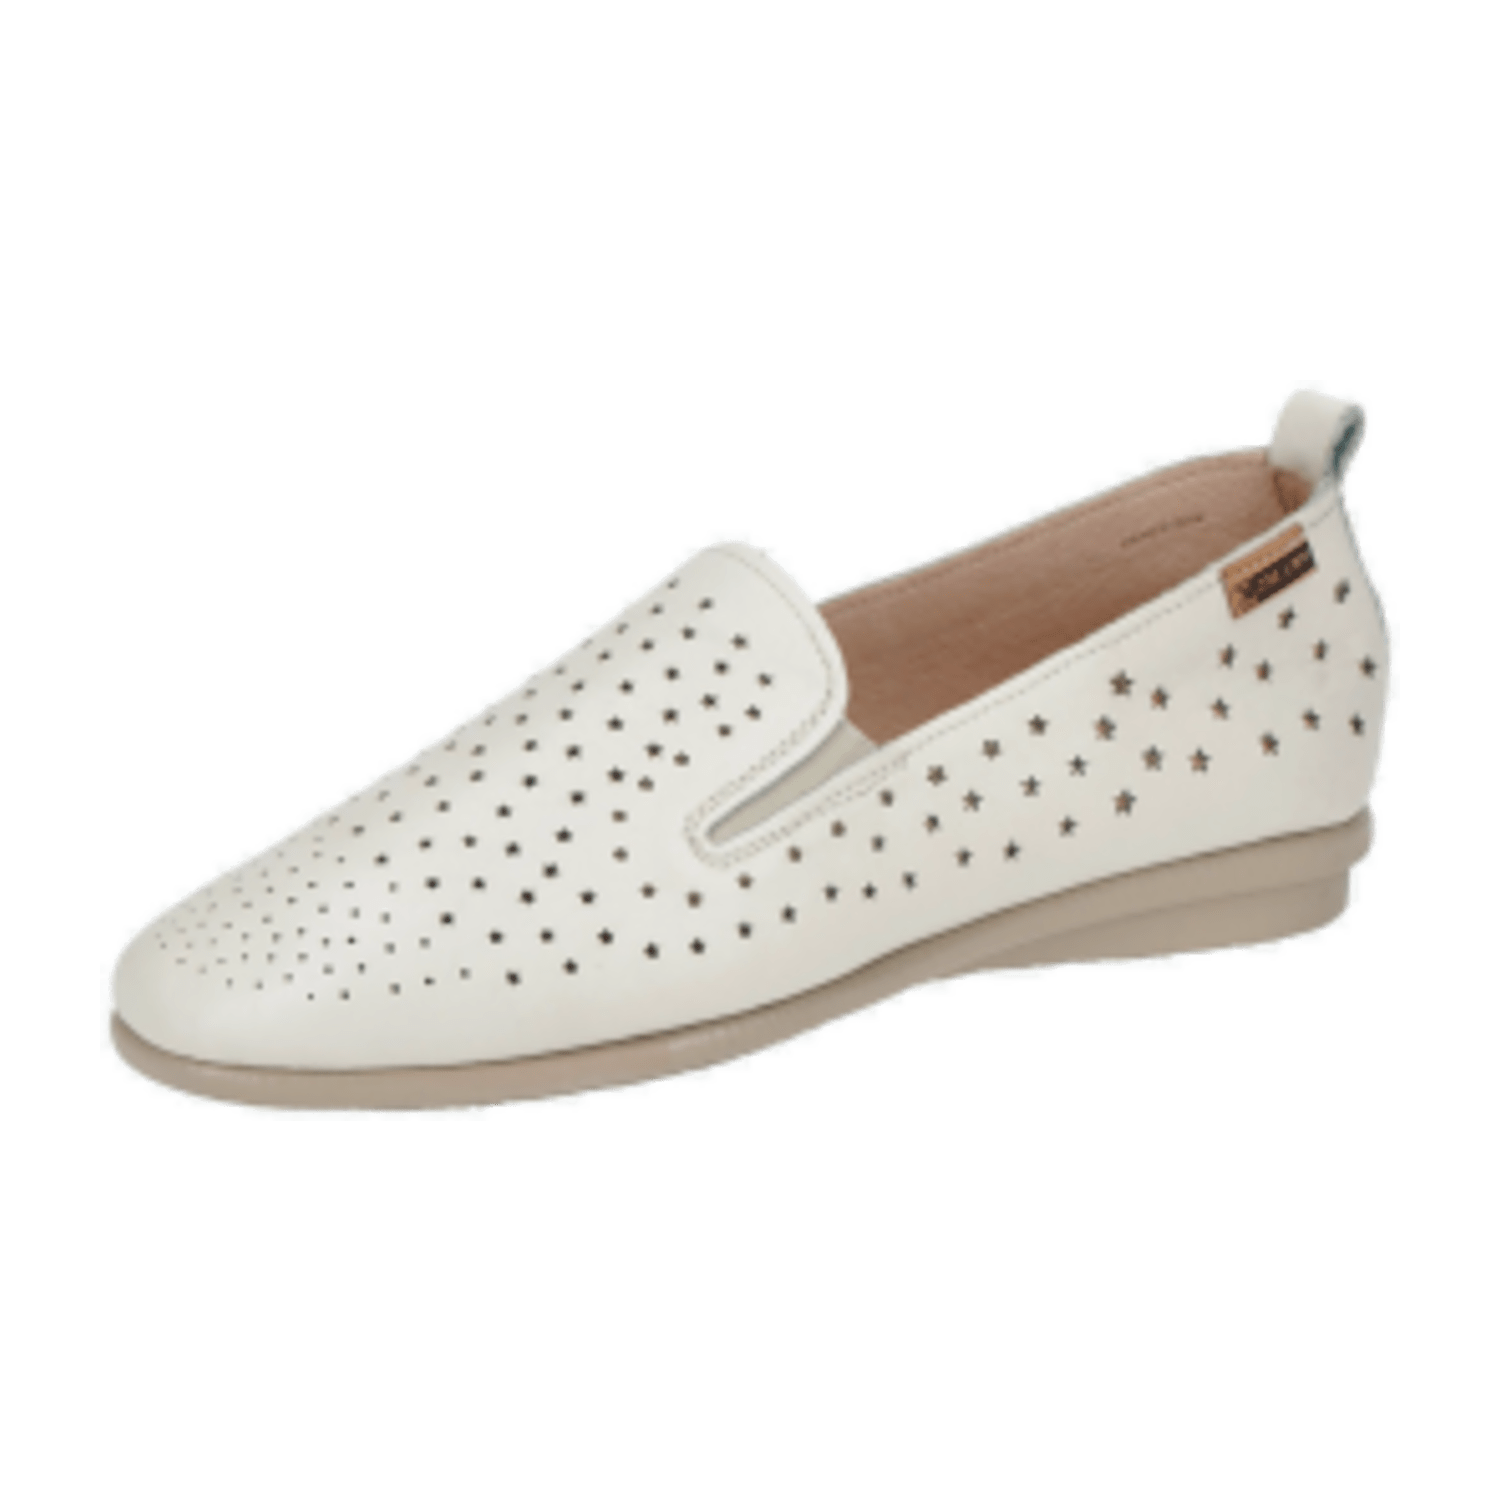 Pikolinos Calabria Schuhe weiß gelocht W9K-3769